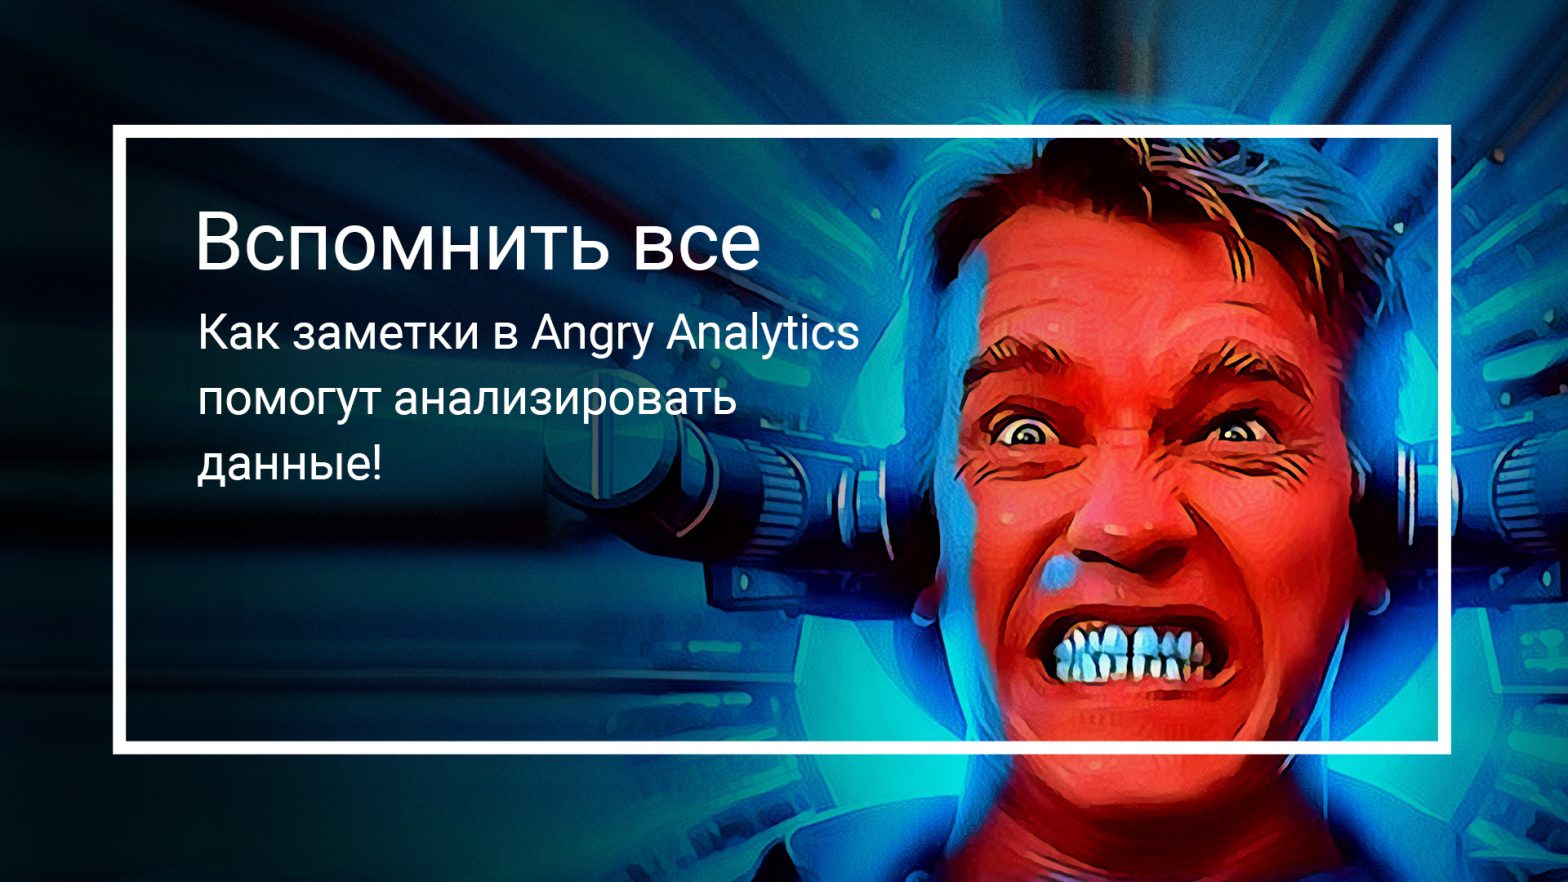 Как заметки в Angry Analytics помогут анализировать данные!